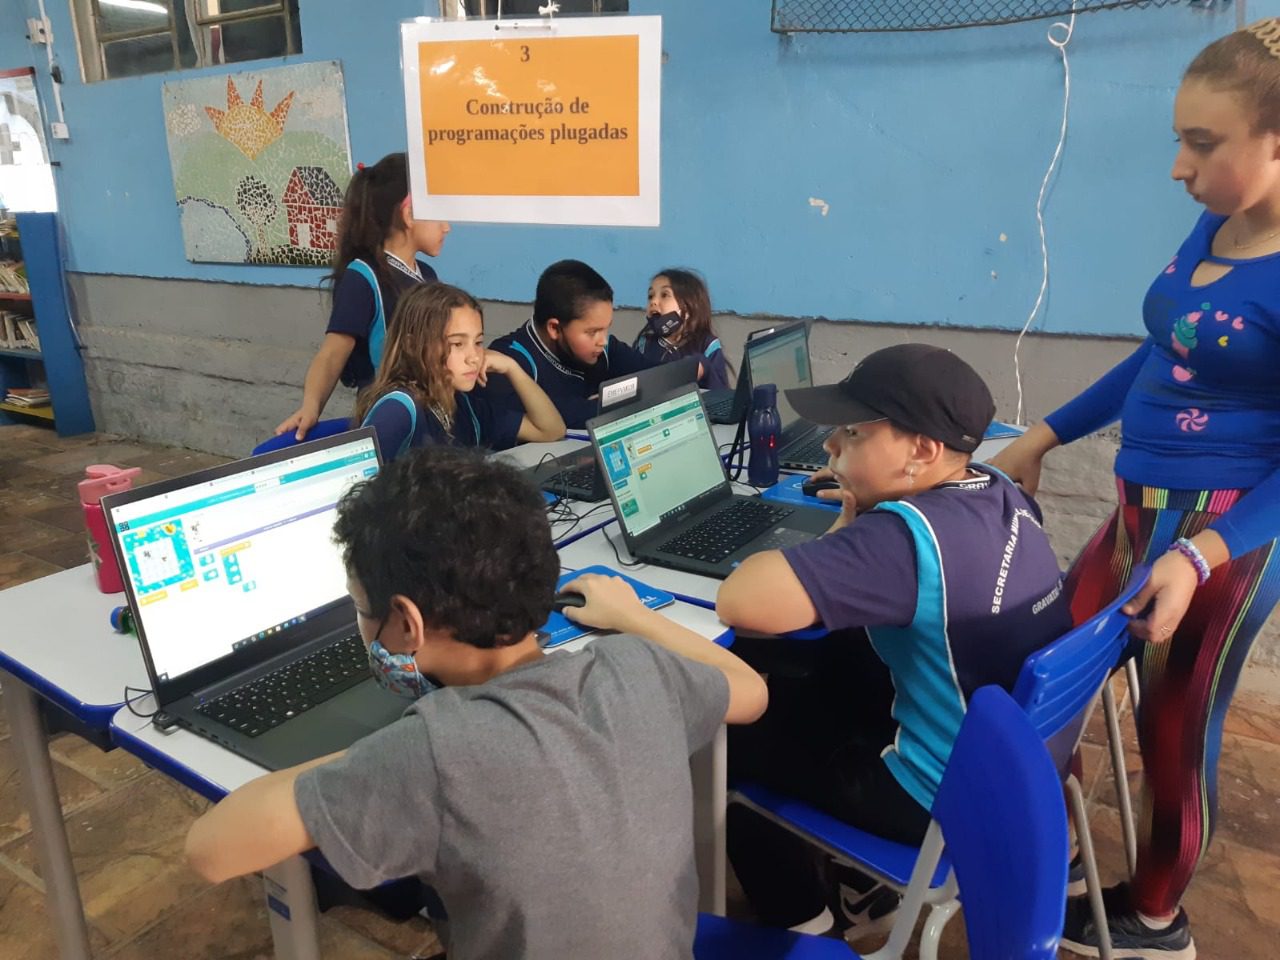 Mostra de tecnologia em Gravataí promete reunir mais de 300 alunos da rede pública